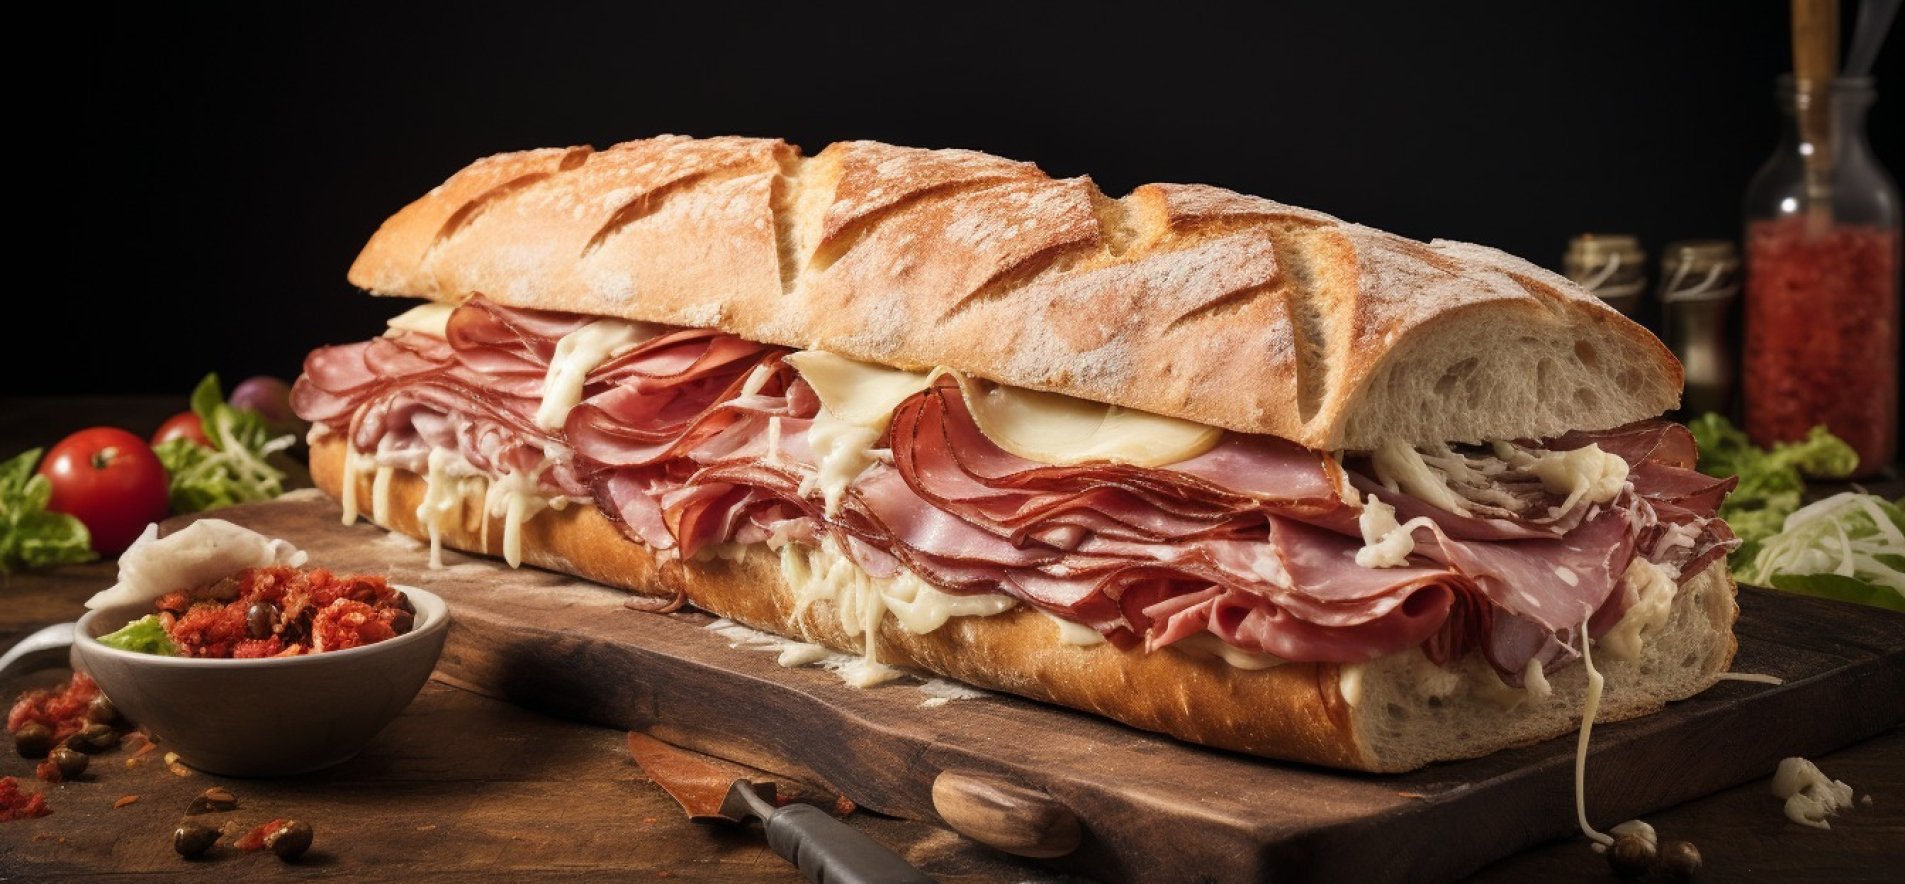 Обед в батоне: как приготовить поистине гигантский сэндвич